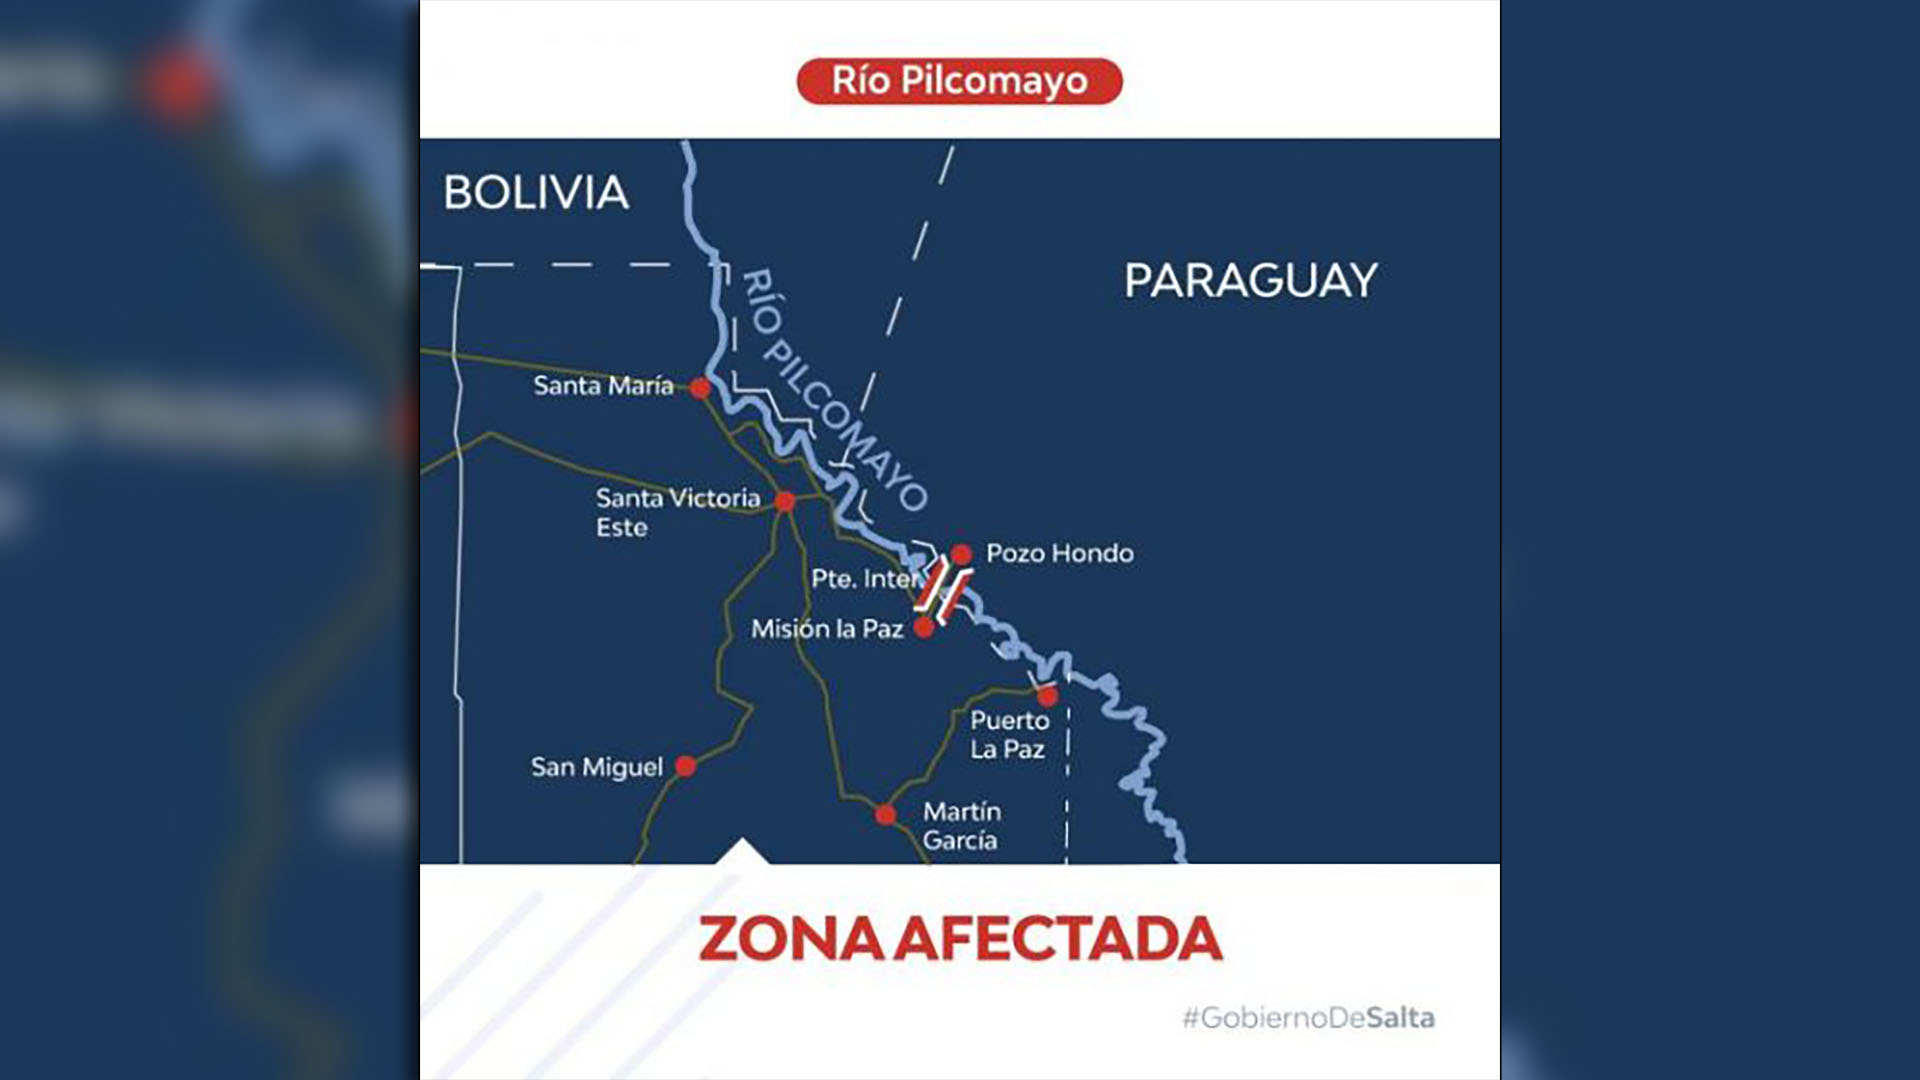 La zona afectada comprende la cuenca que va desde Hito 1 hasta el límite con la provincia de Formosa (Gobierno de Salta)